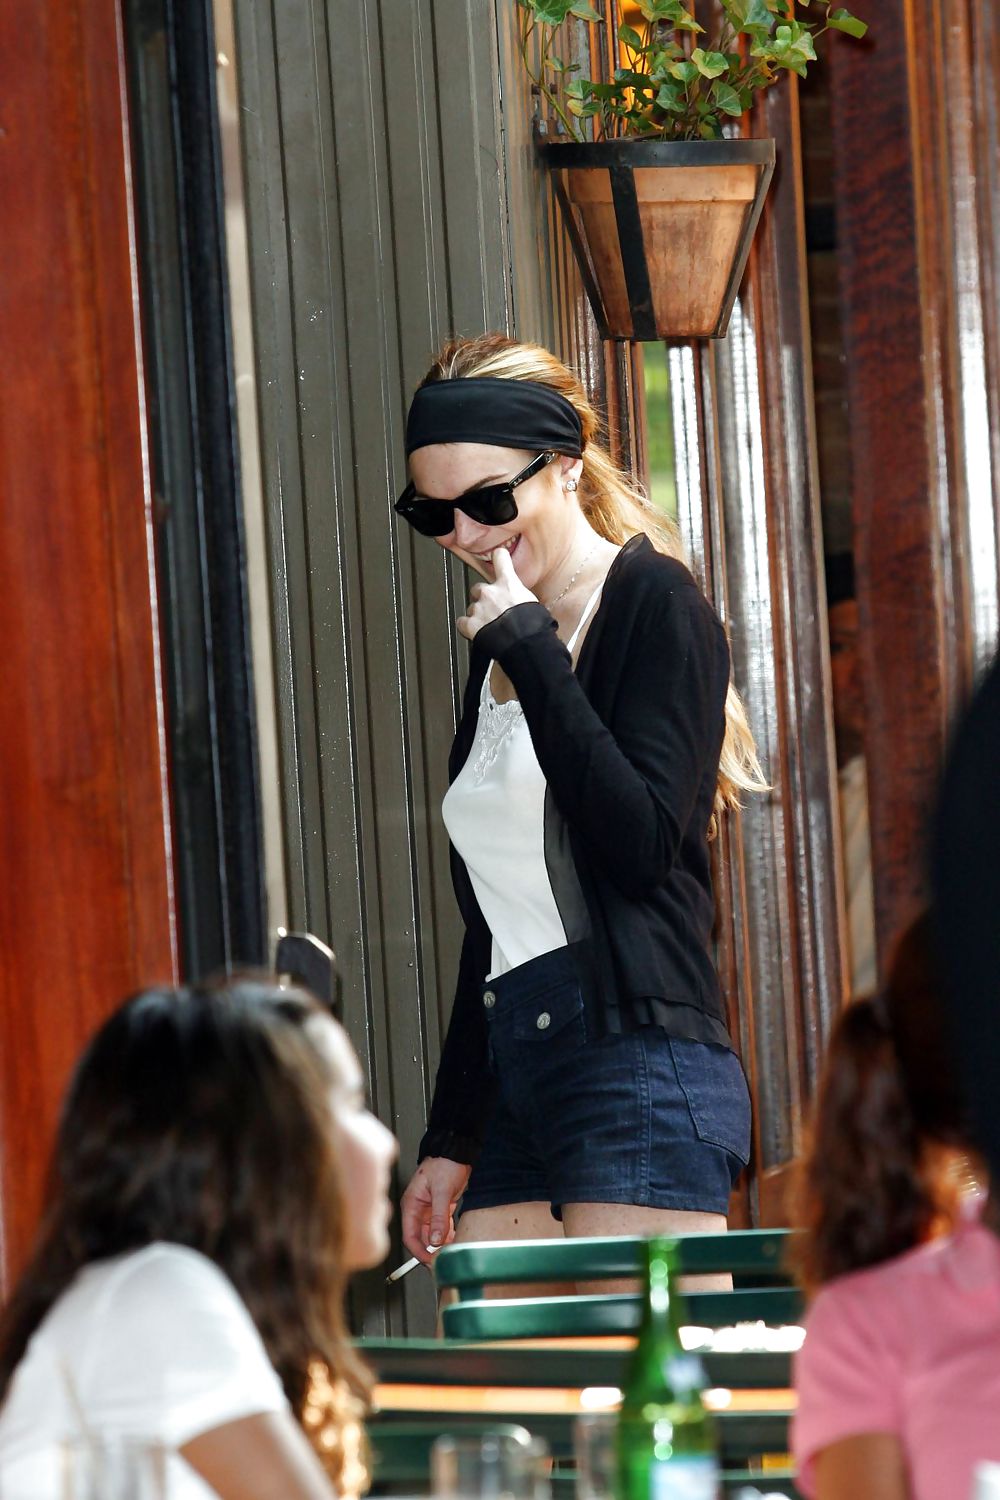 リンジー・ローハンがデニムのショートパンツでタバコを吸う姿が美しい
 #3647115